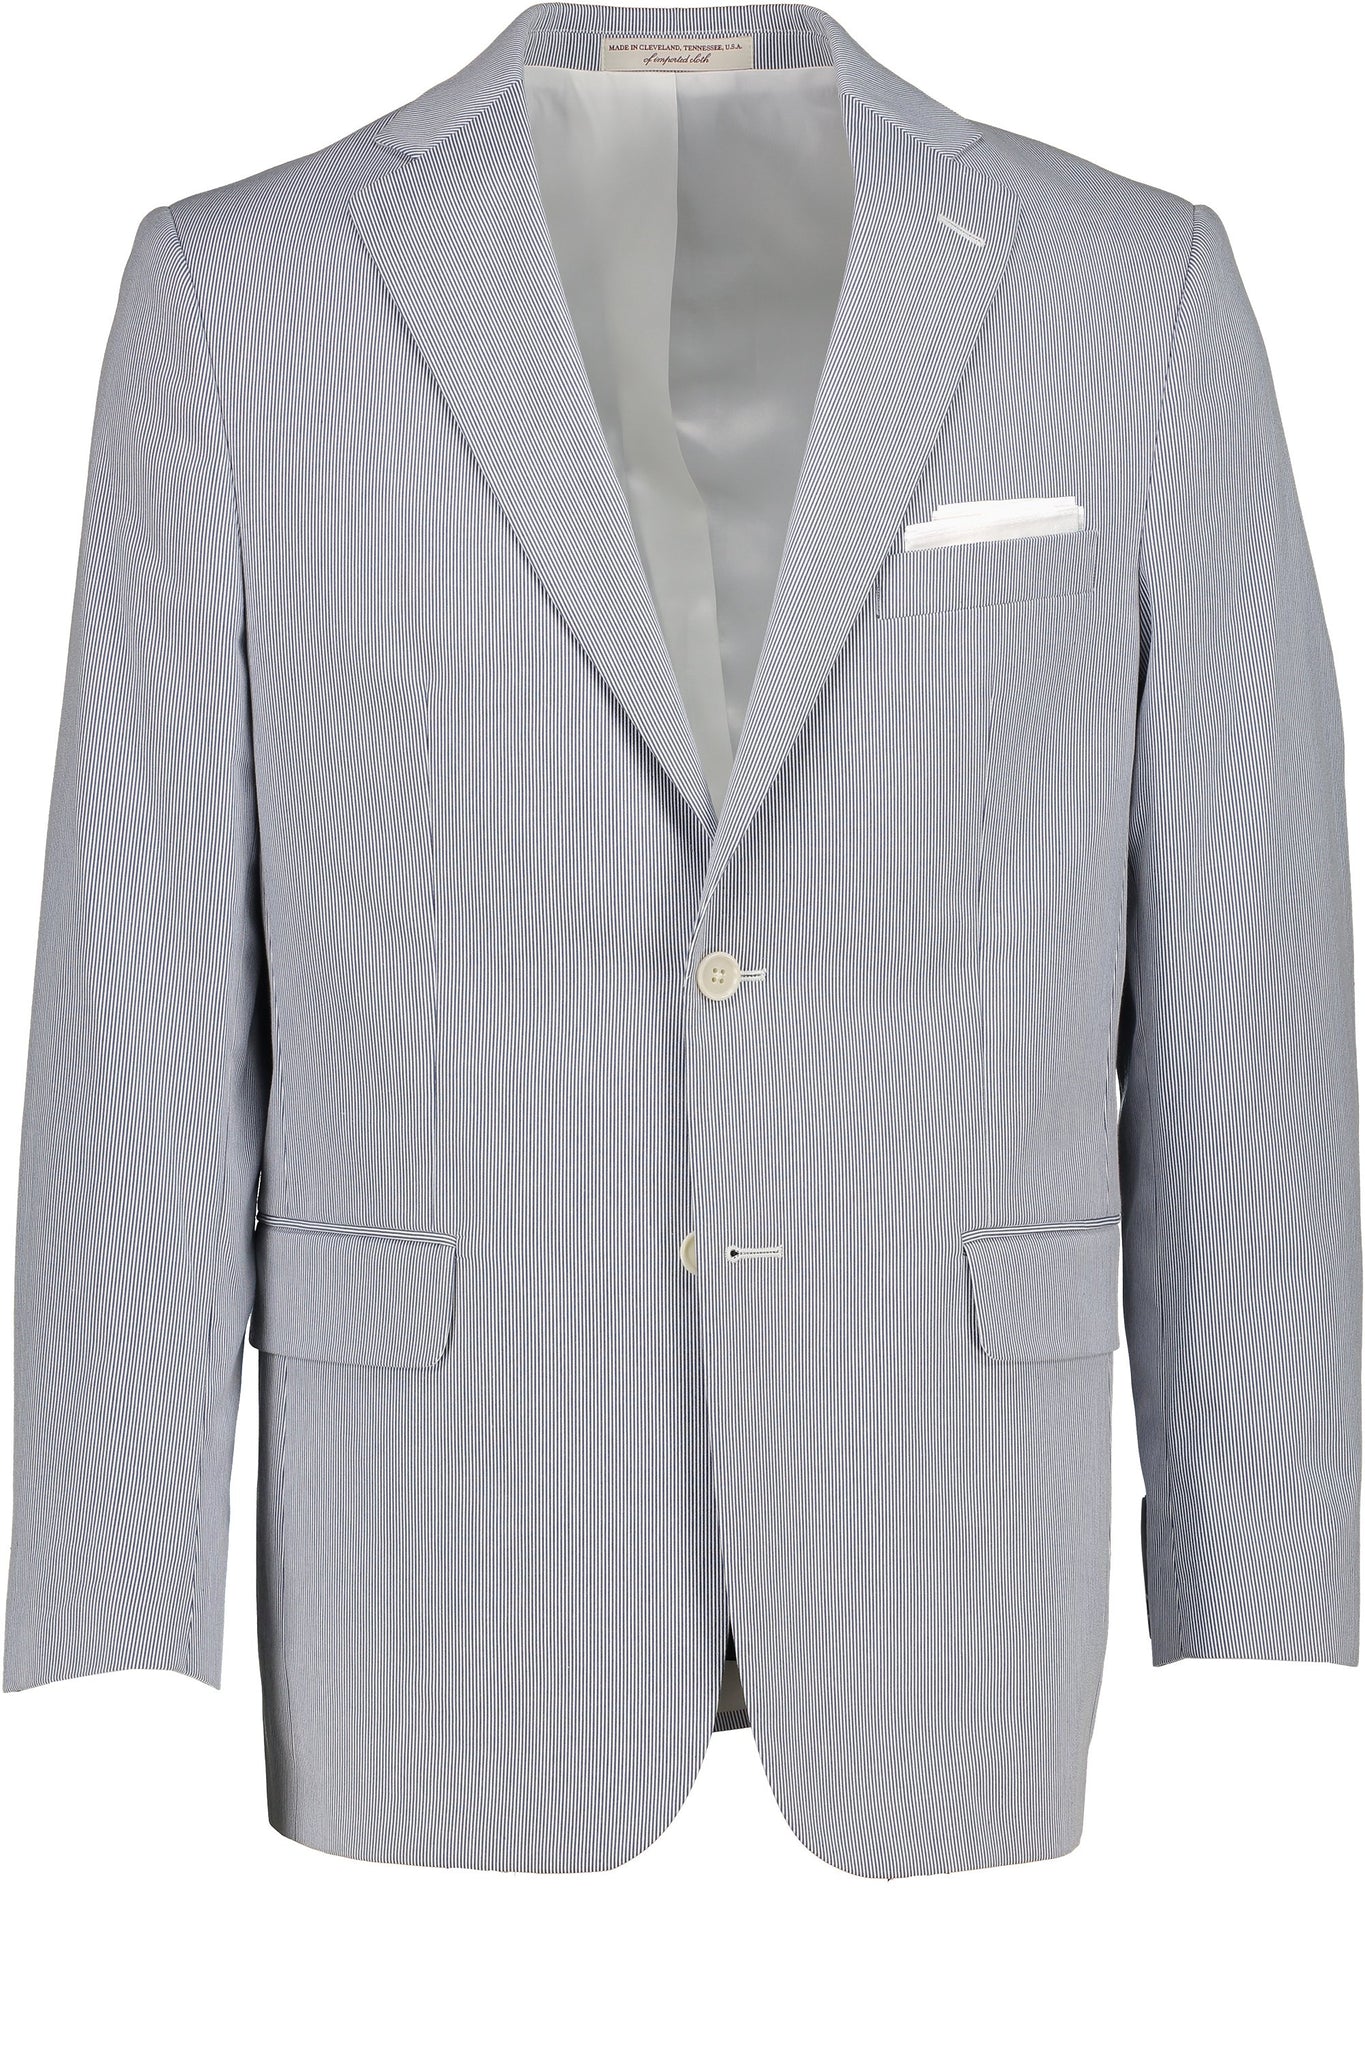 Buy Antonio Uomo Men's Suits Slim Fit - 3 Piece Suit Set Men Blazer with 2  Button Jacket, Vest and Pants, Black, L at Amazon.in